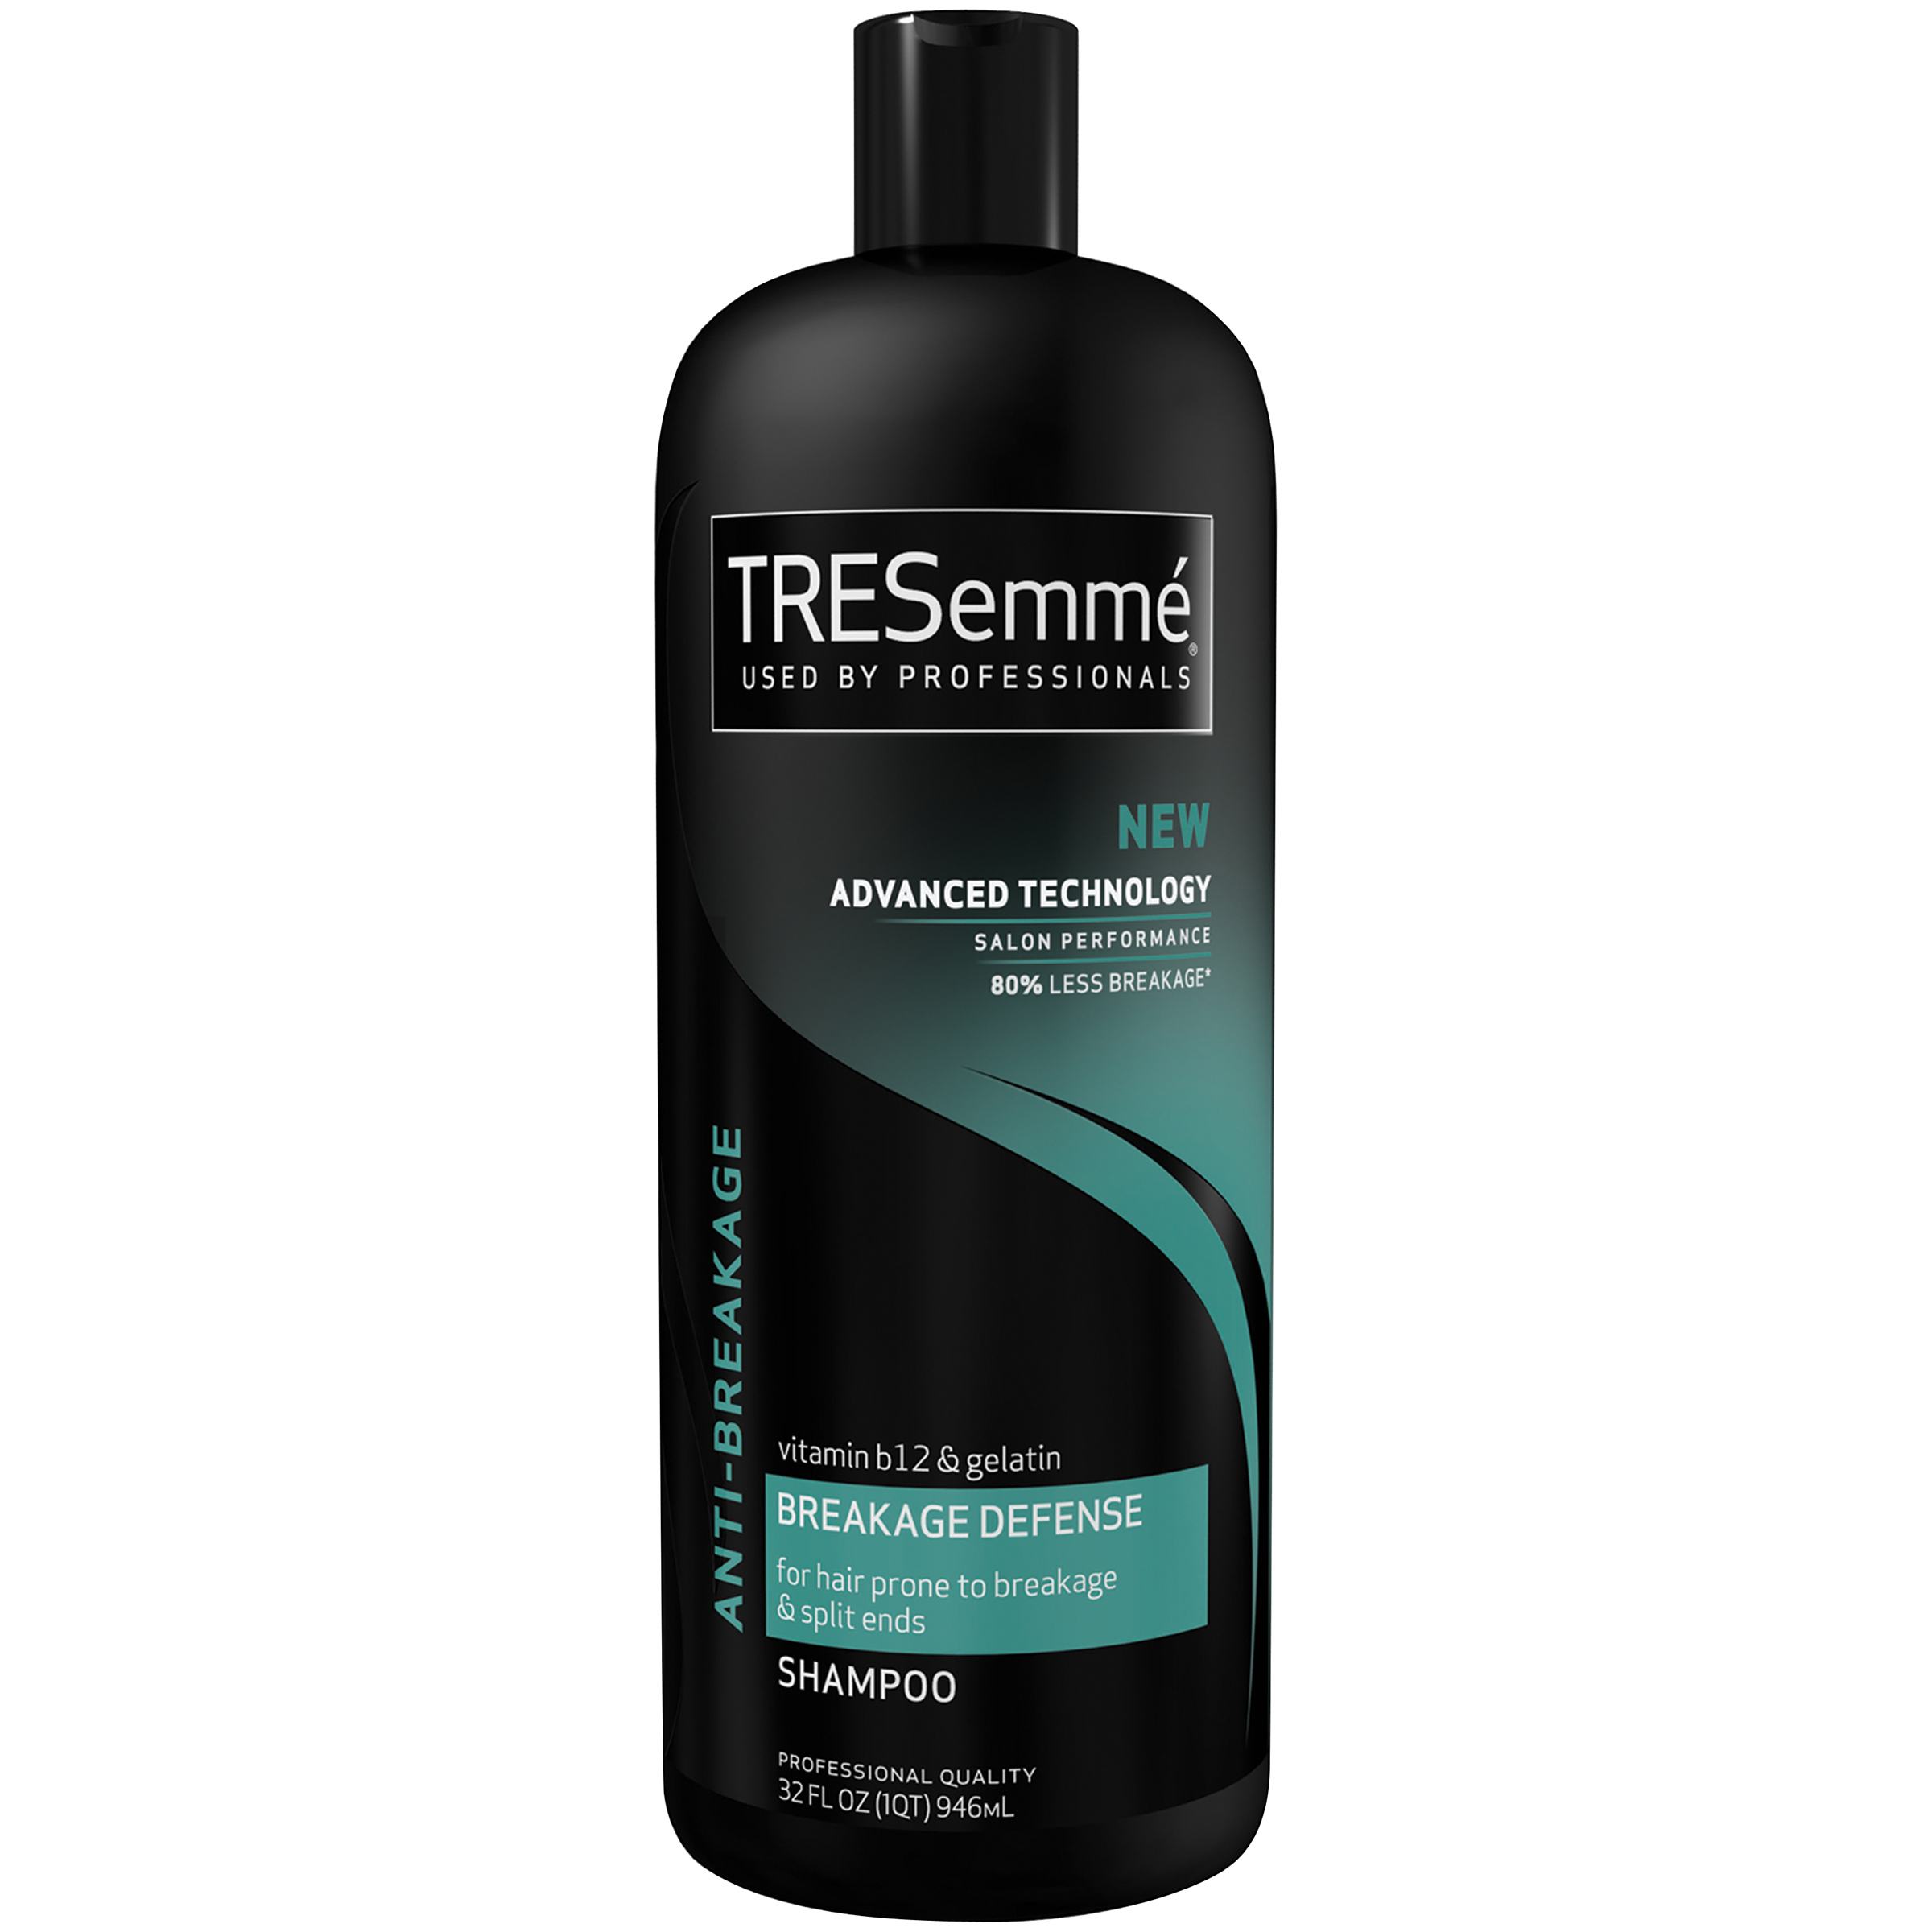 TRESemme Shampoo, Anti-Breakage, 32 fl oz (1 qt) 946 ml